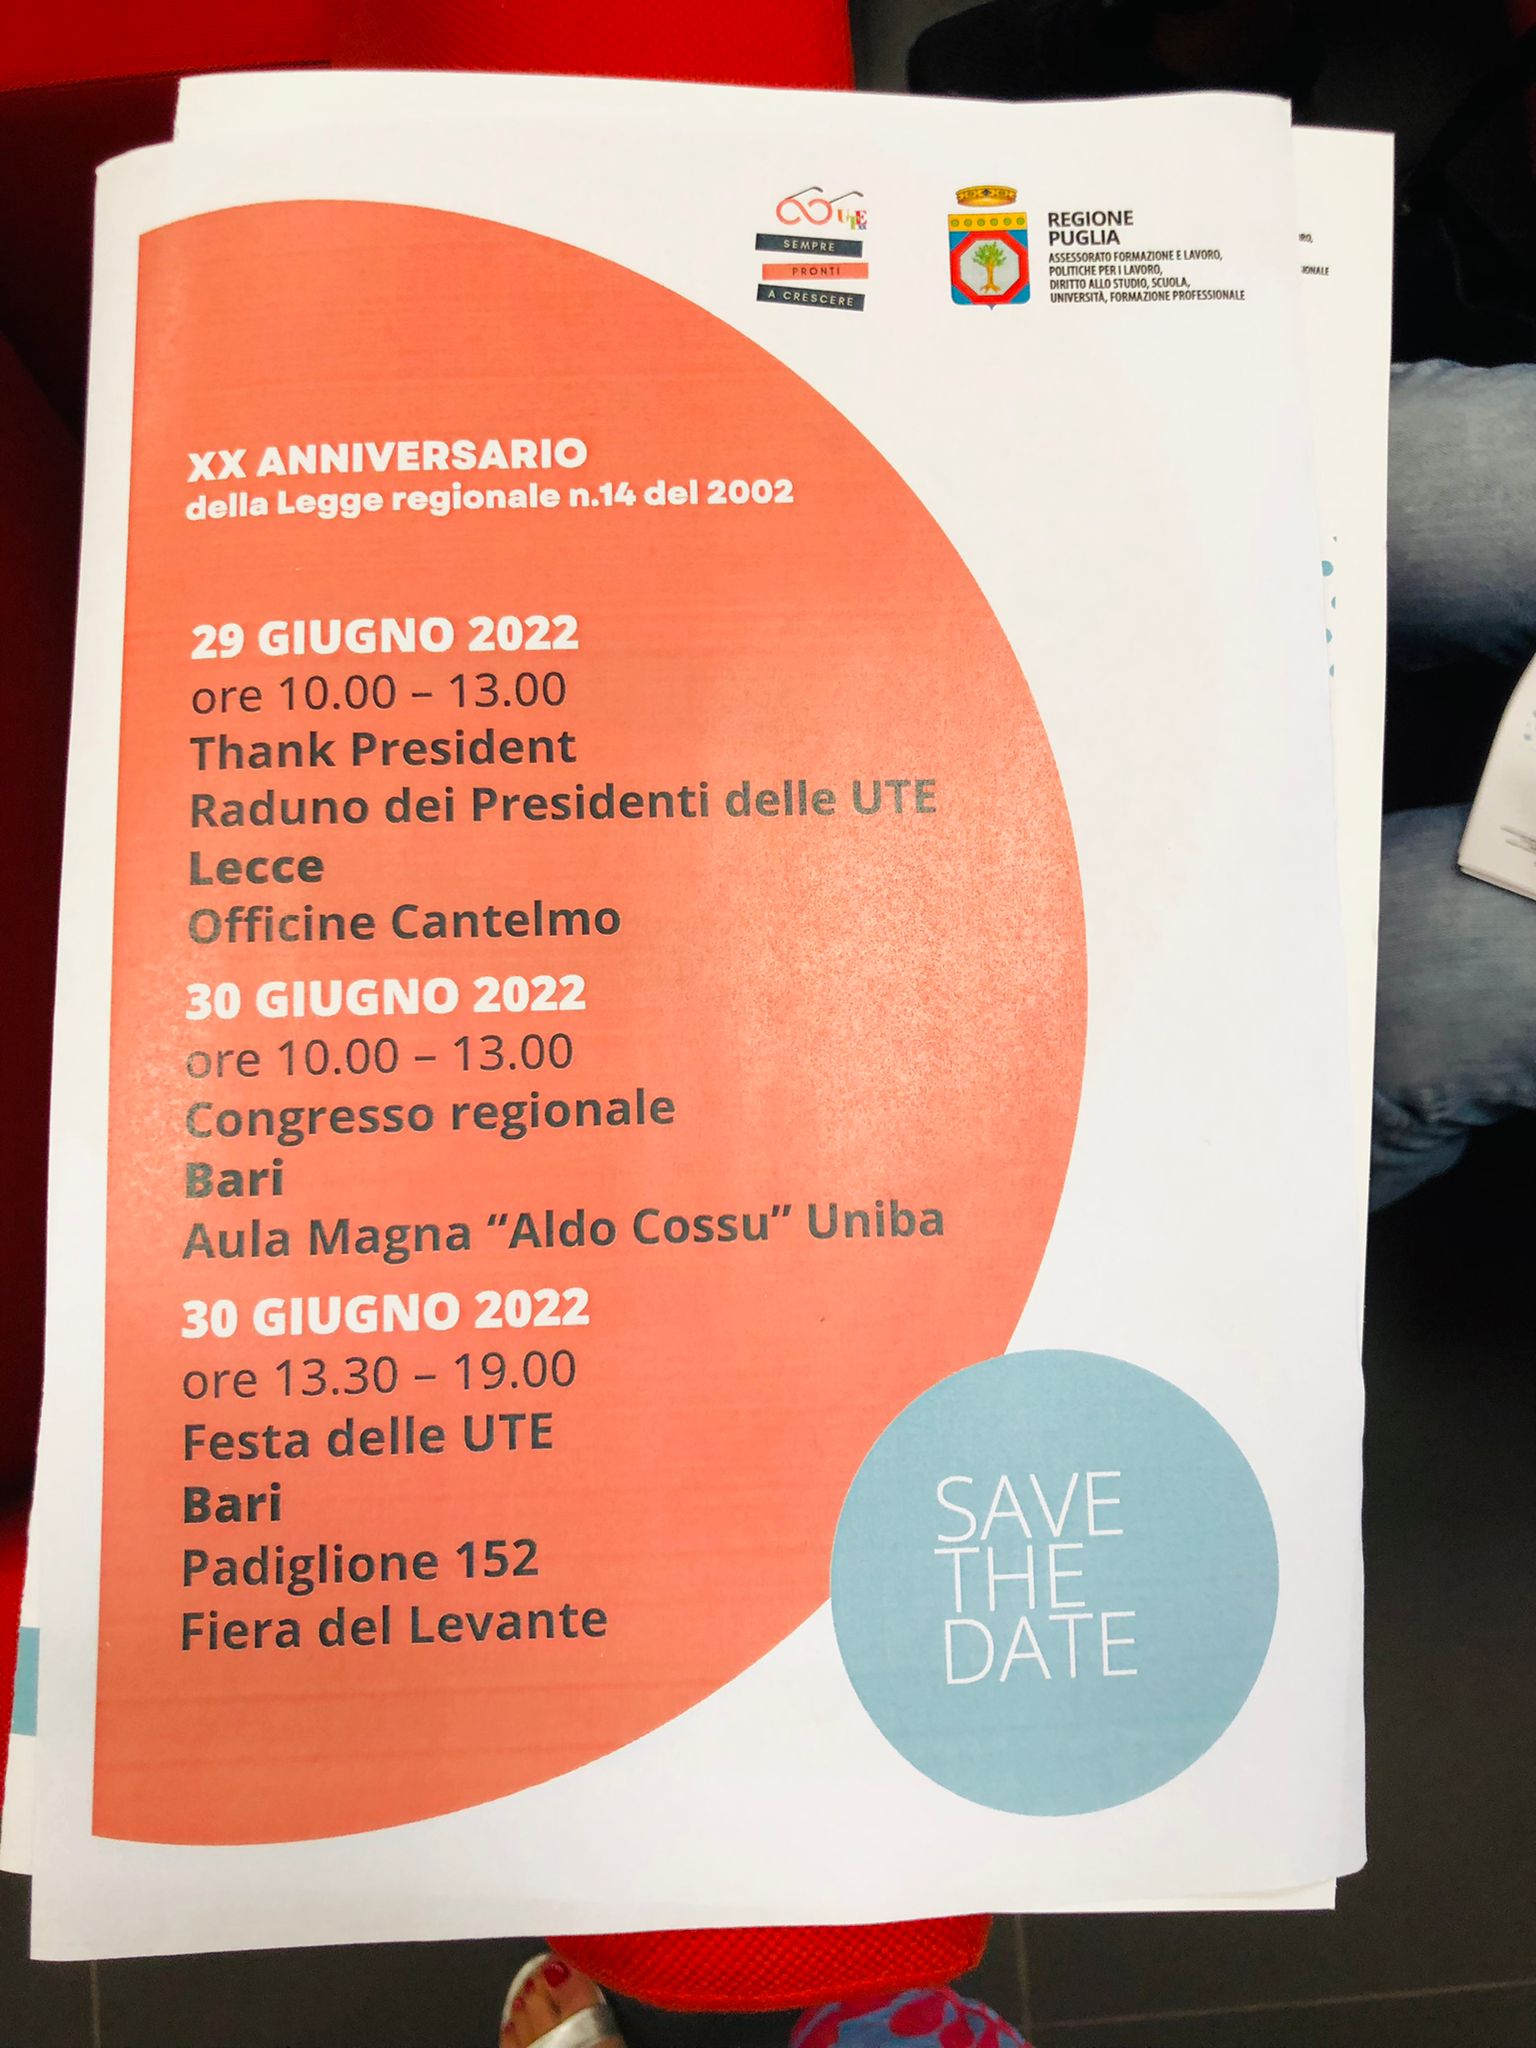 Galleria Vent’anni della Legge regionale delle Università popolari e della Terza età: oltre duecento iniziative in Puglia - Diapositiva 1 di 4